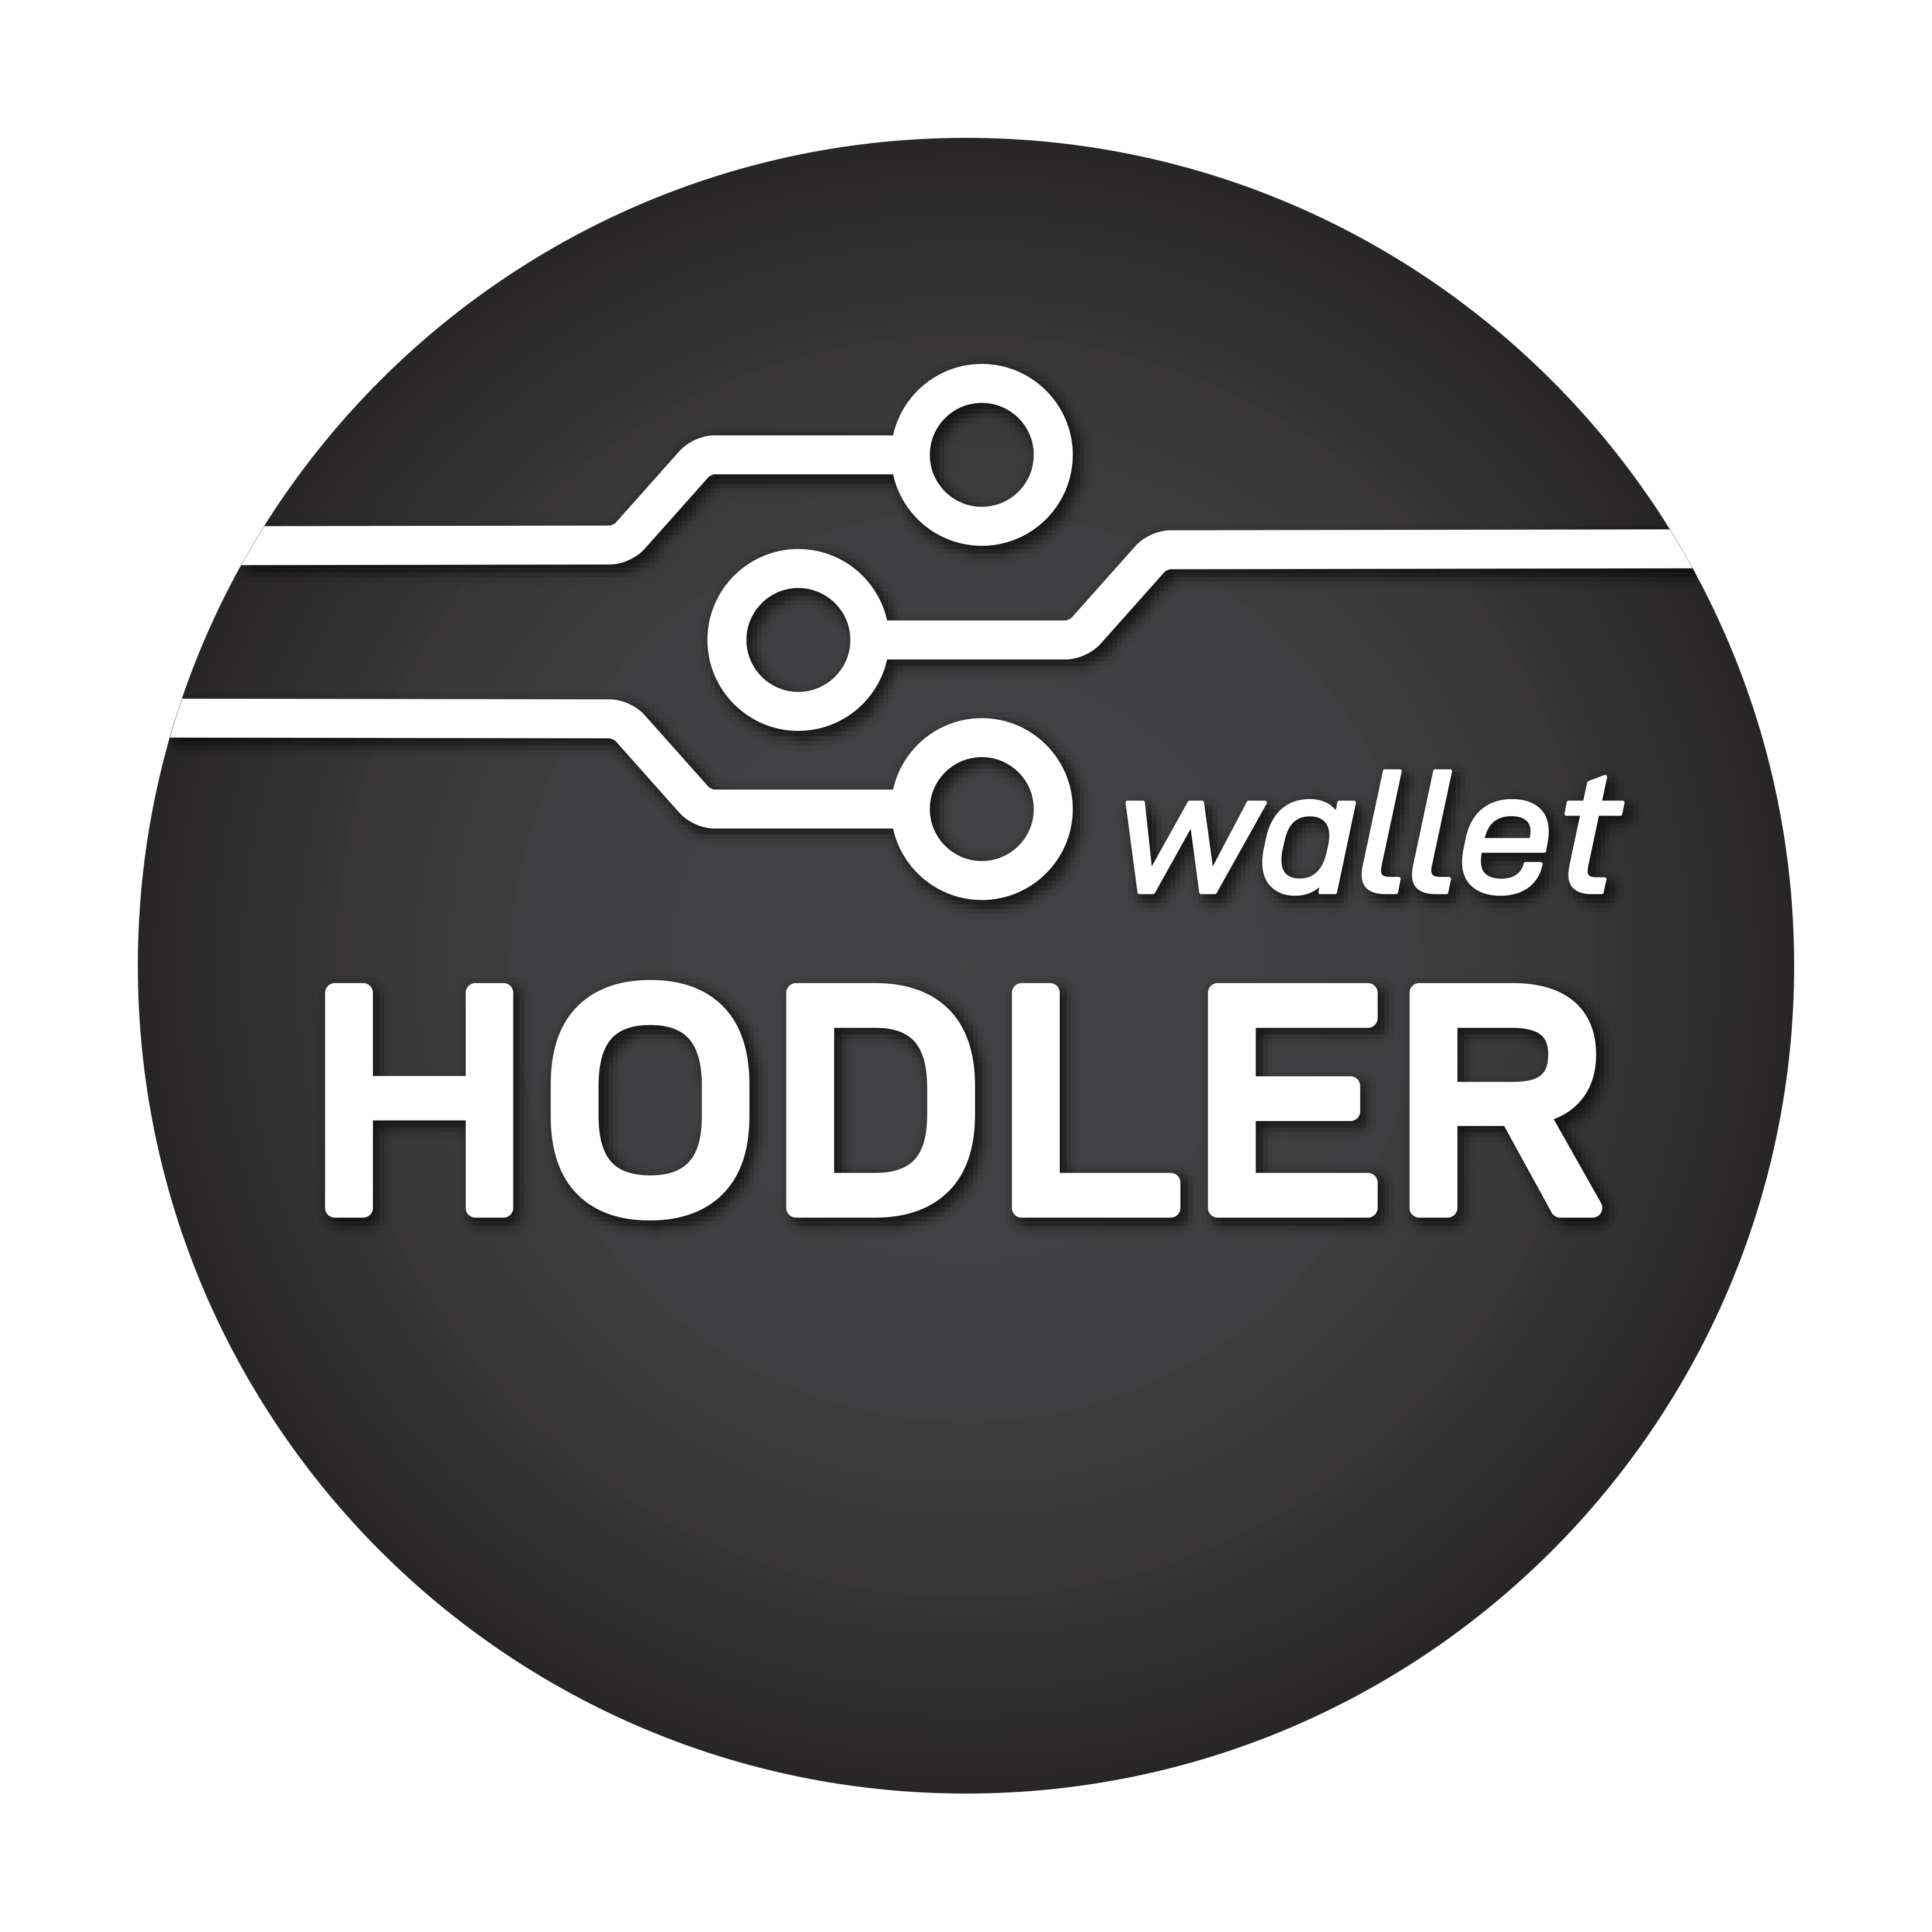 HODLER_wallet_RGBfull.png